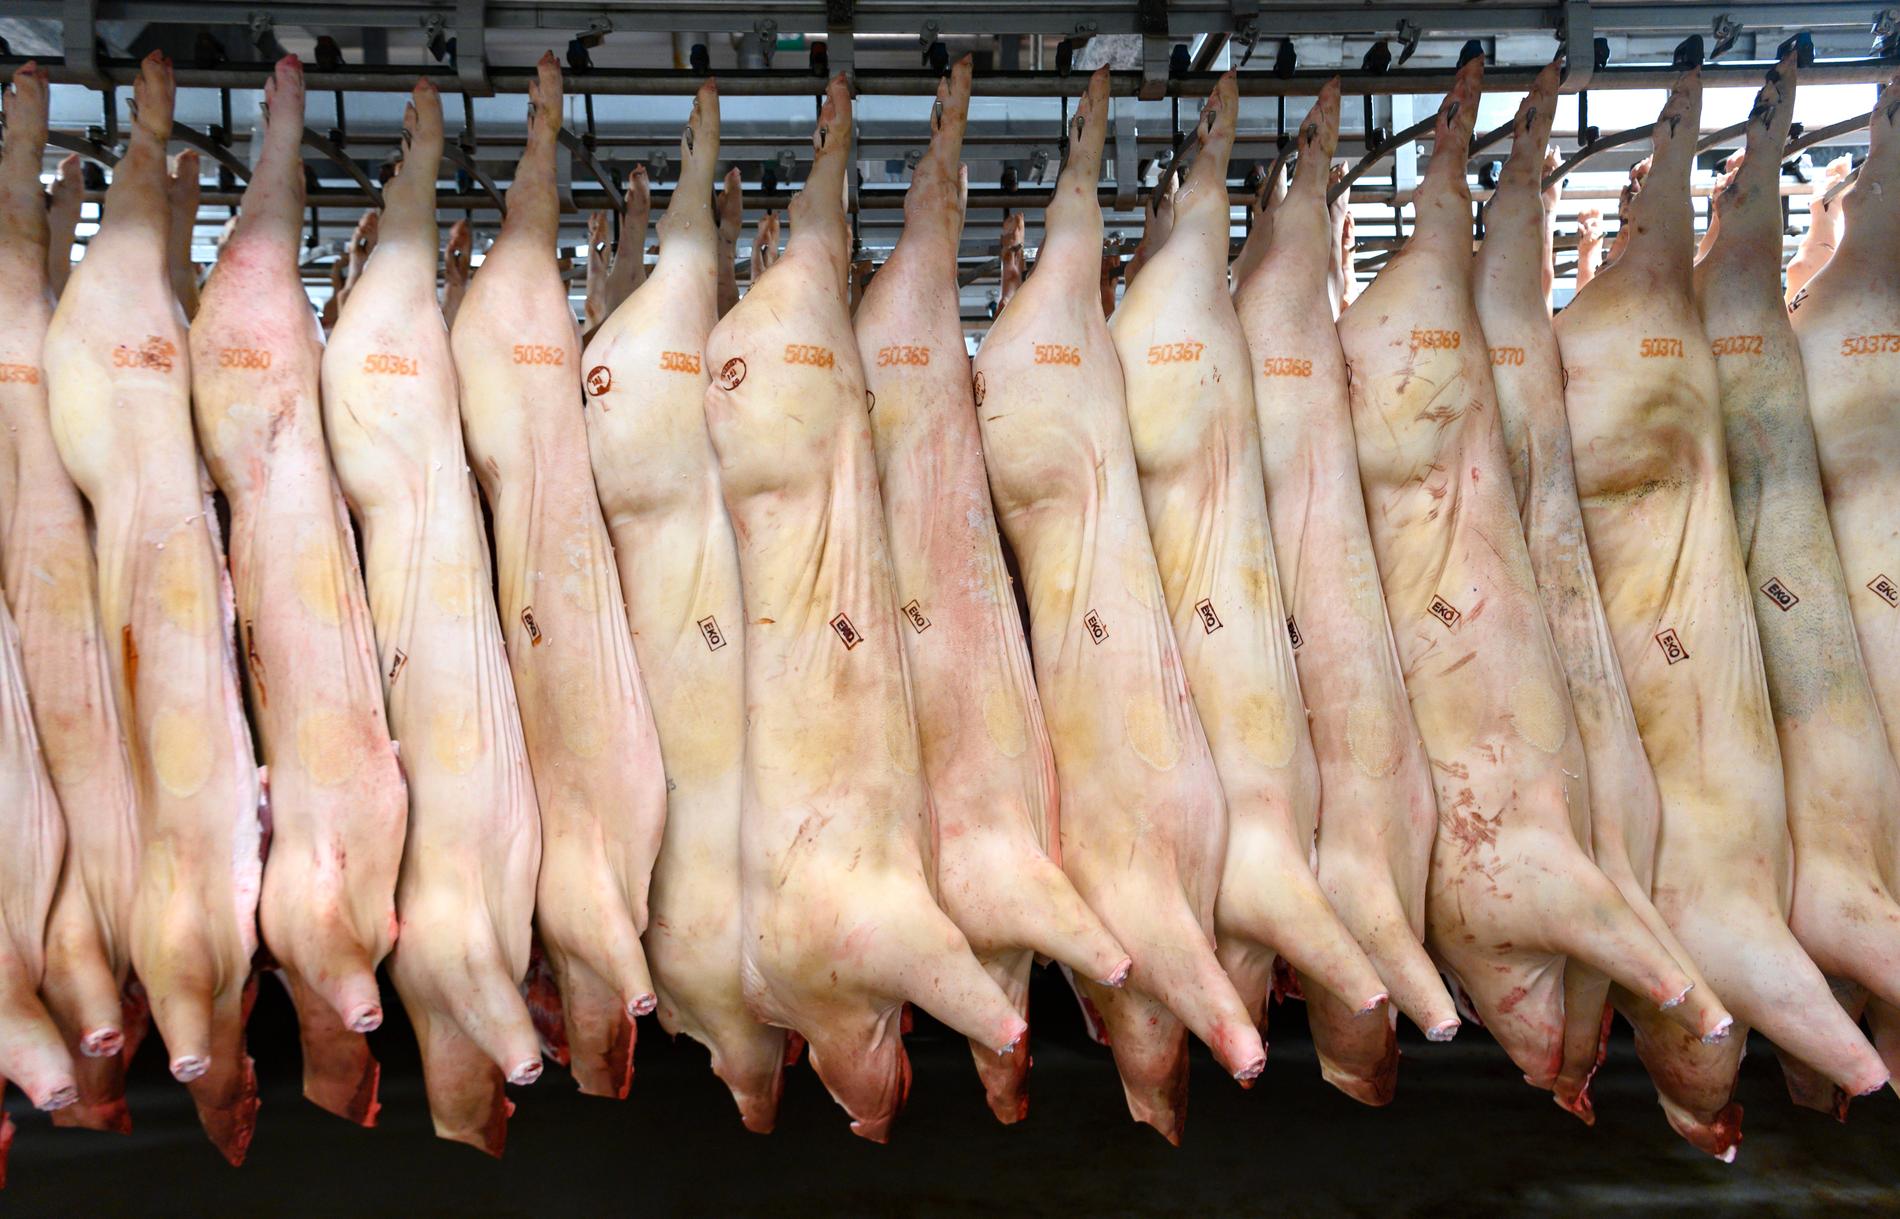 Afrikansk svinpest har slagit ut stora delar av den kinesiska grisproduktionen och under det första halvåret ökade exporten av griskött från EU till Kina med 75 procent. Arkivbild.